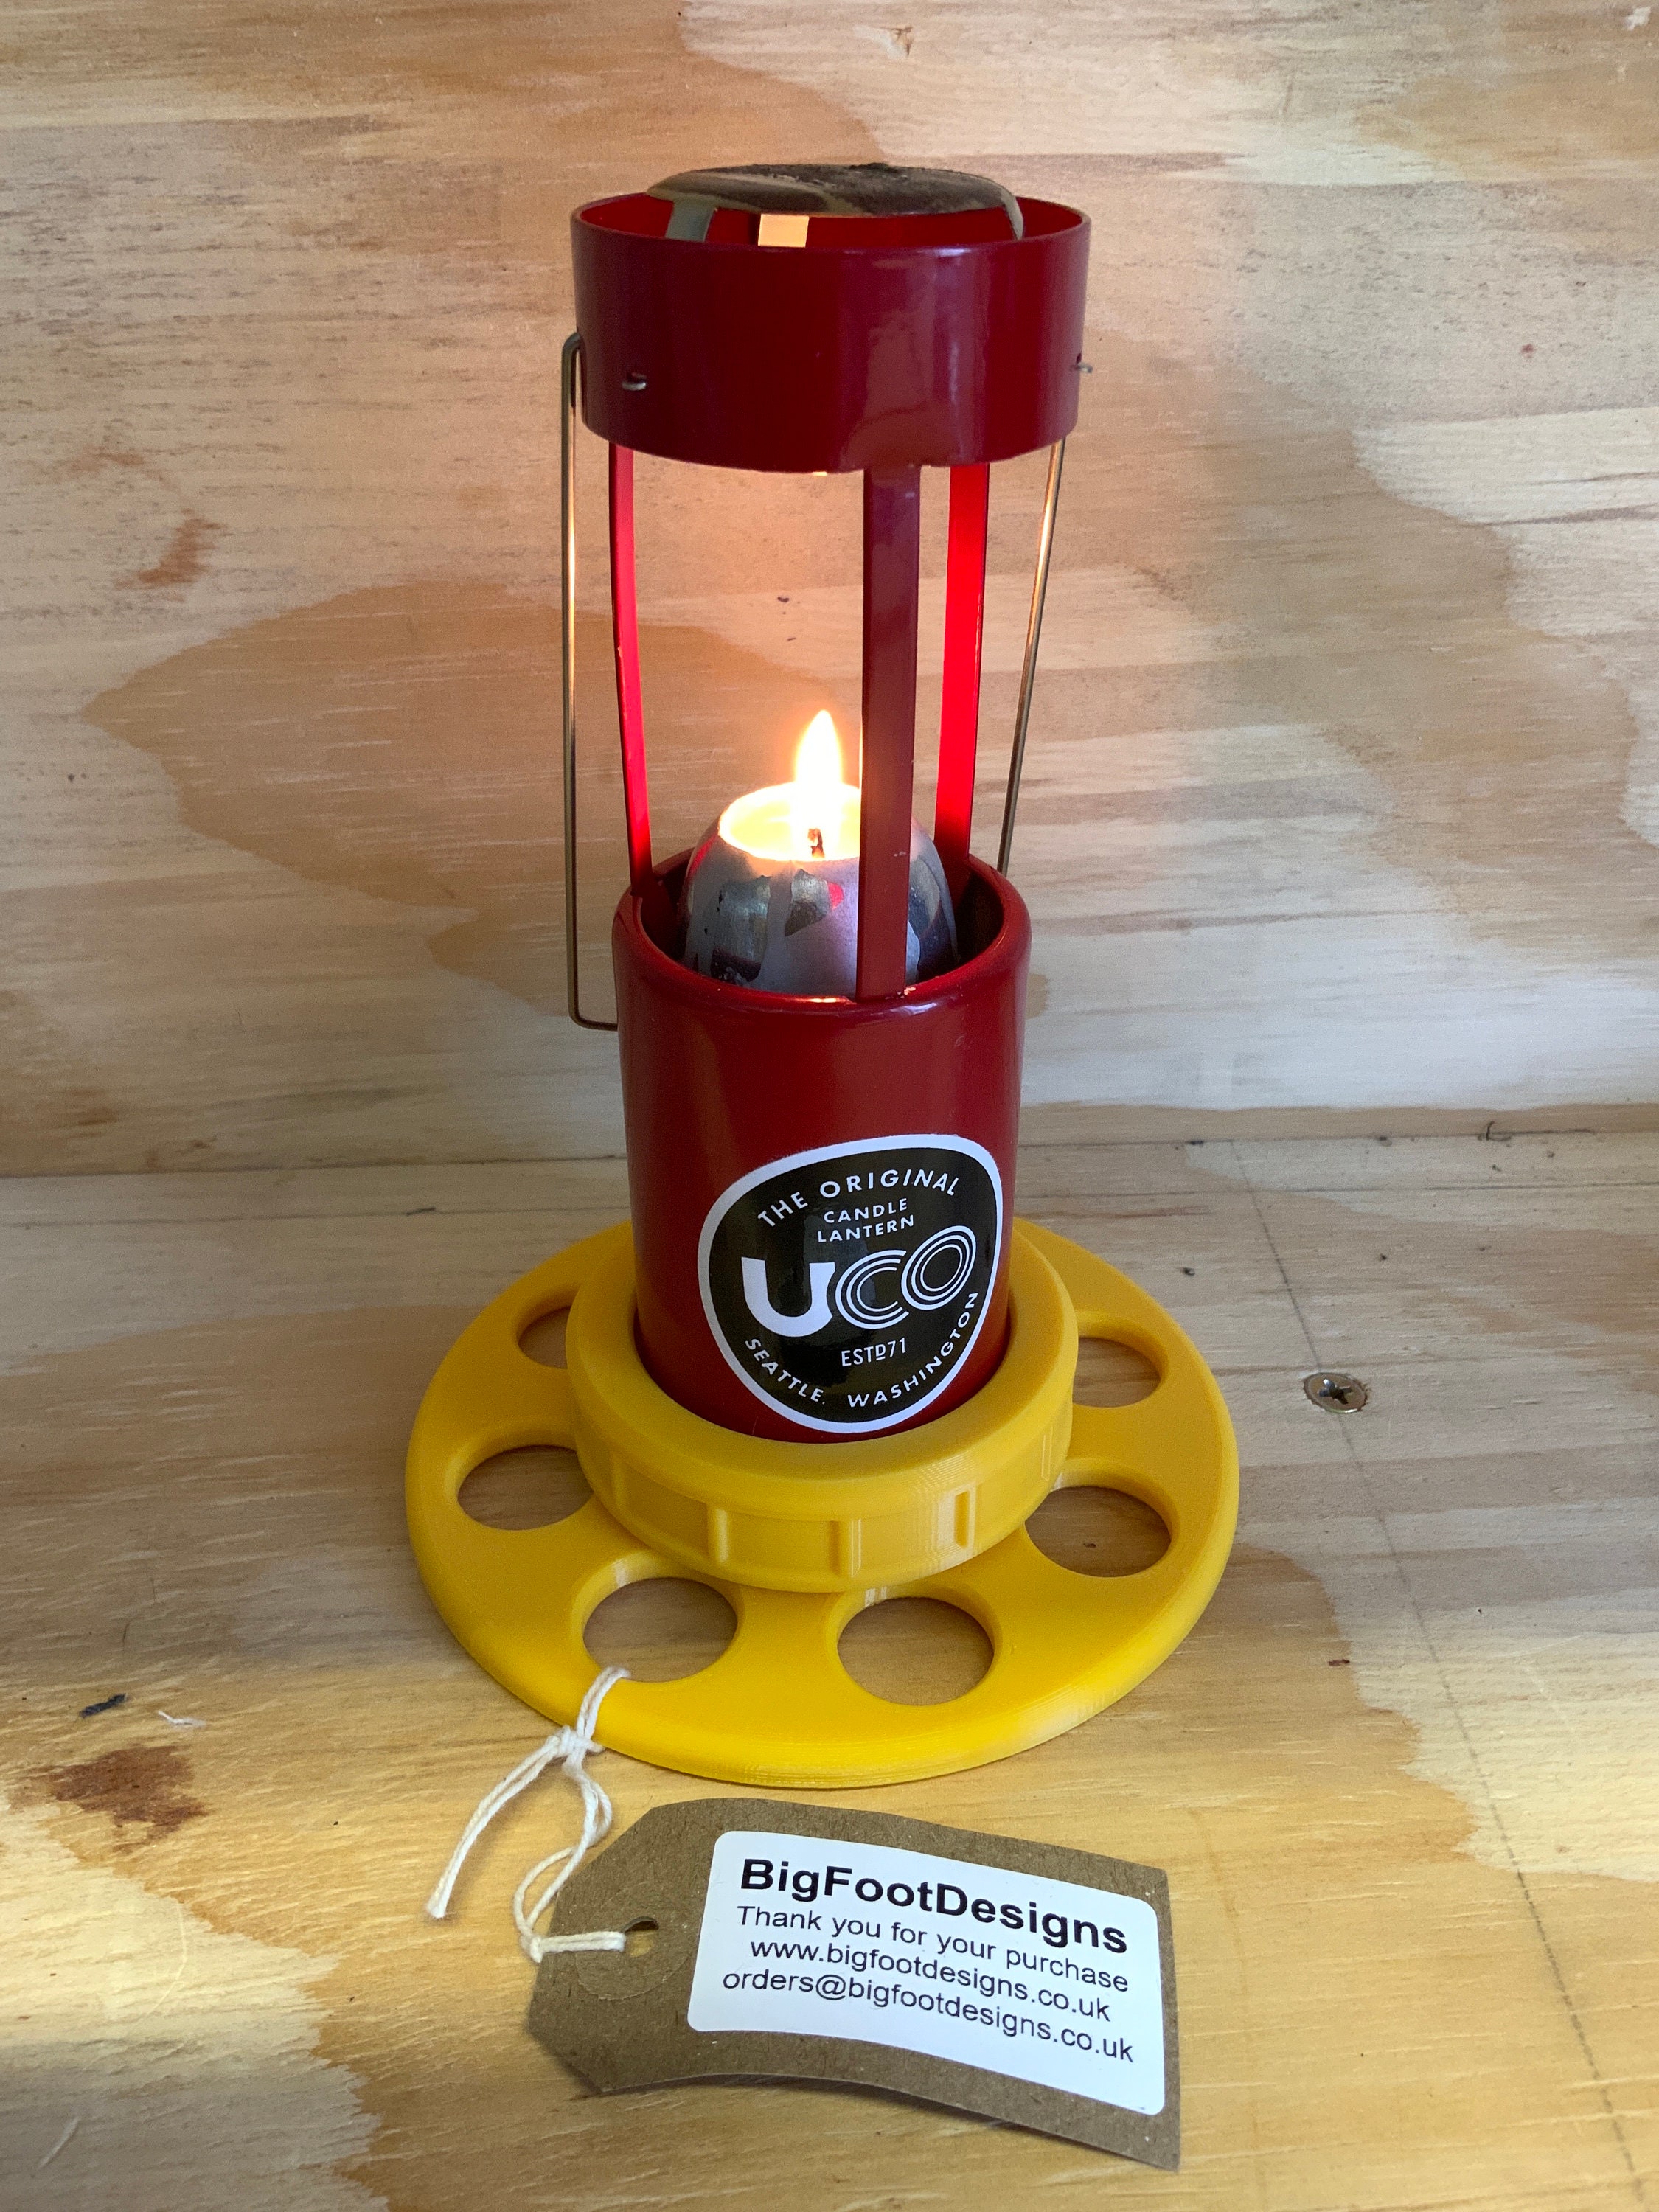 UCO Candlier Candle Lantern